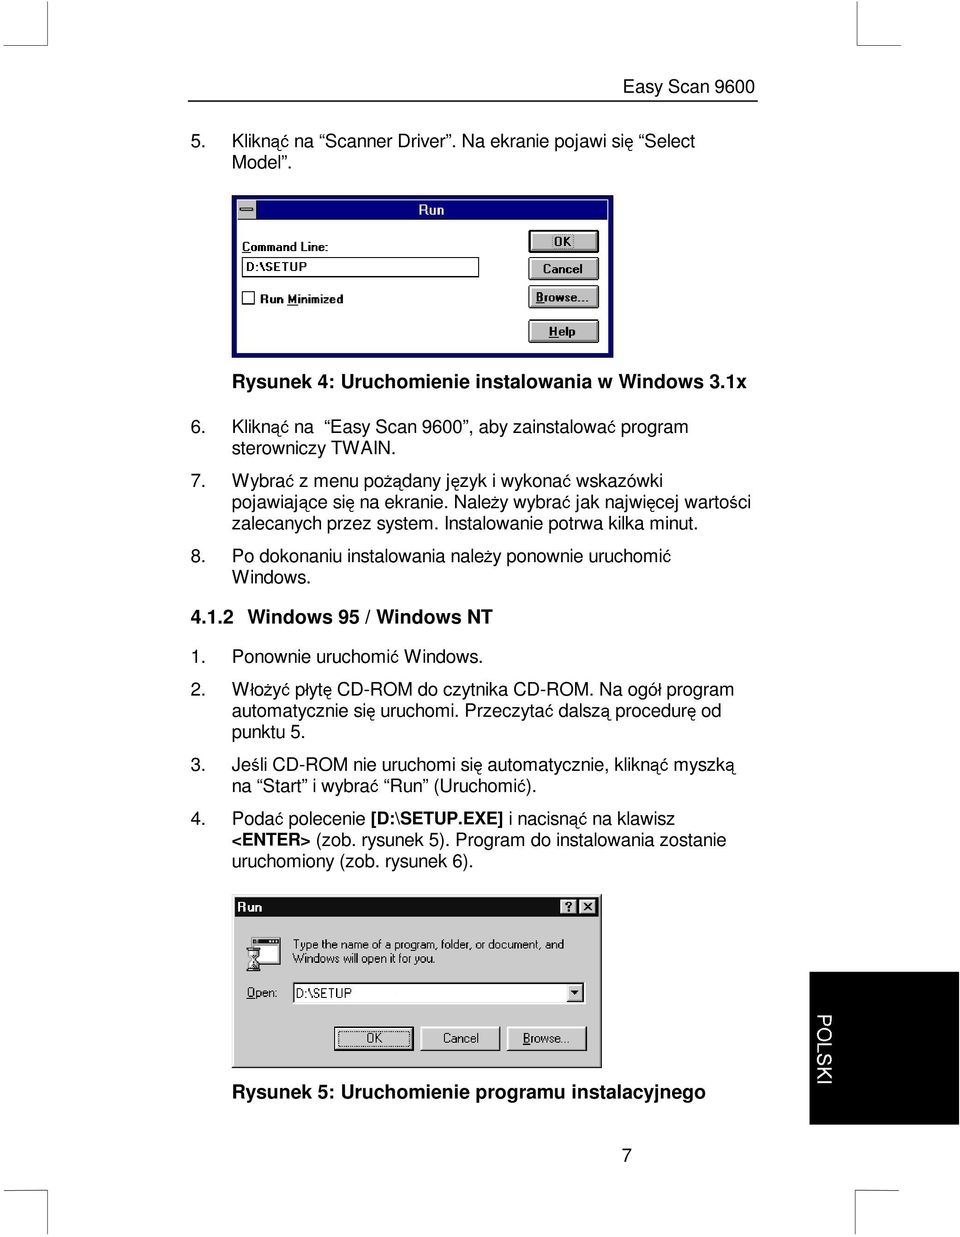 Po dokonaniu instalowania nale*y ponownie uruchomiü Windows. 4.1.2 Windows 95 / Windows NT 1. Ponownie uruchomiü Windows. 2. Wáo*yü páyt CD-ROM do czytnika CD-ROM.